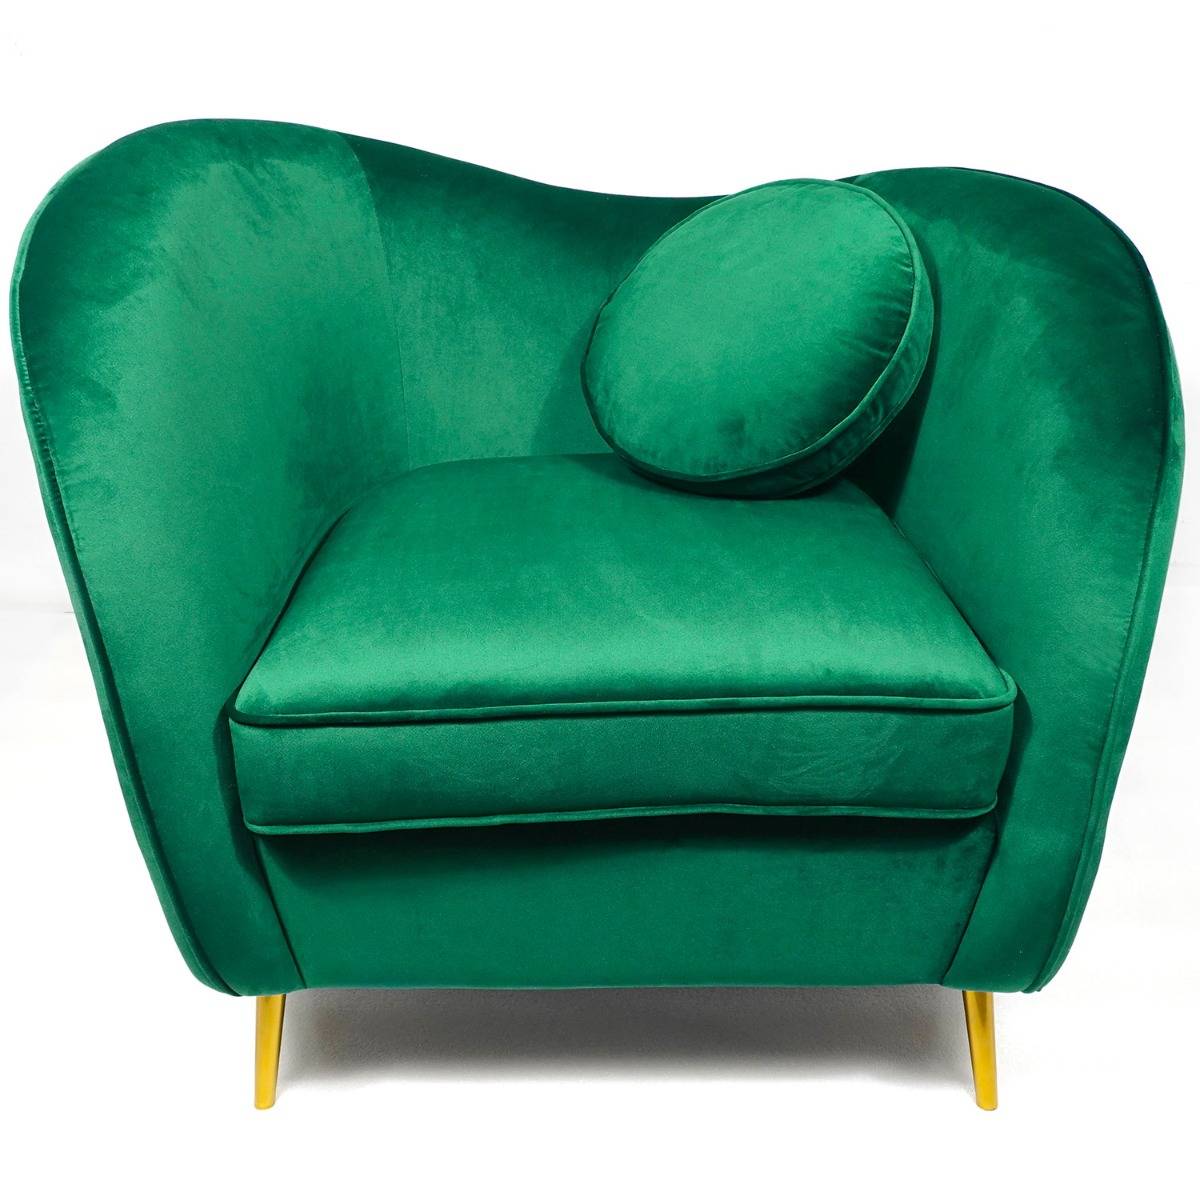 Marco Polo Hijsen schijf Altess fauteuil van groen fluweel met poten van goudkleurig metaal